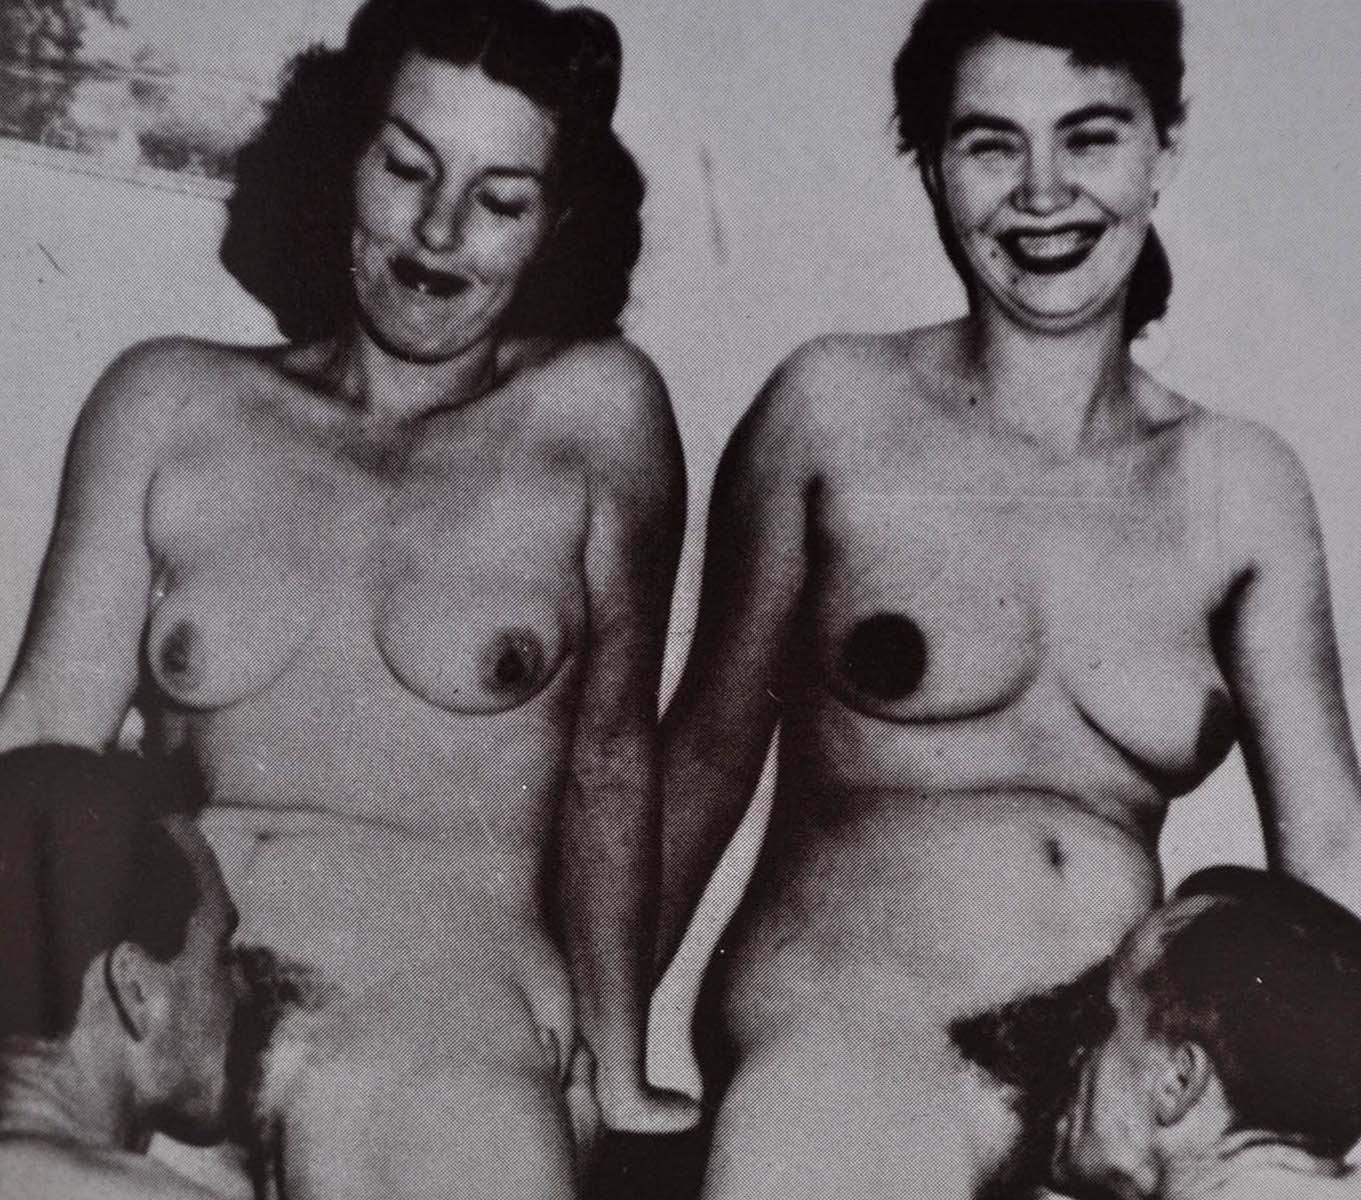 Vintage Pornography